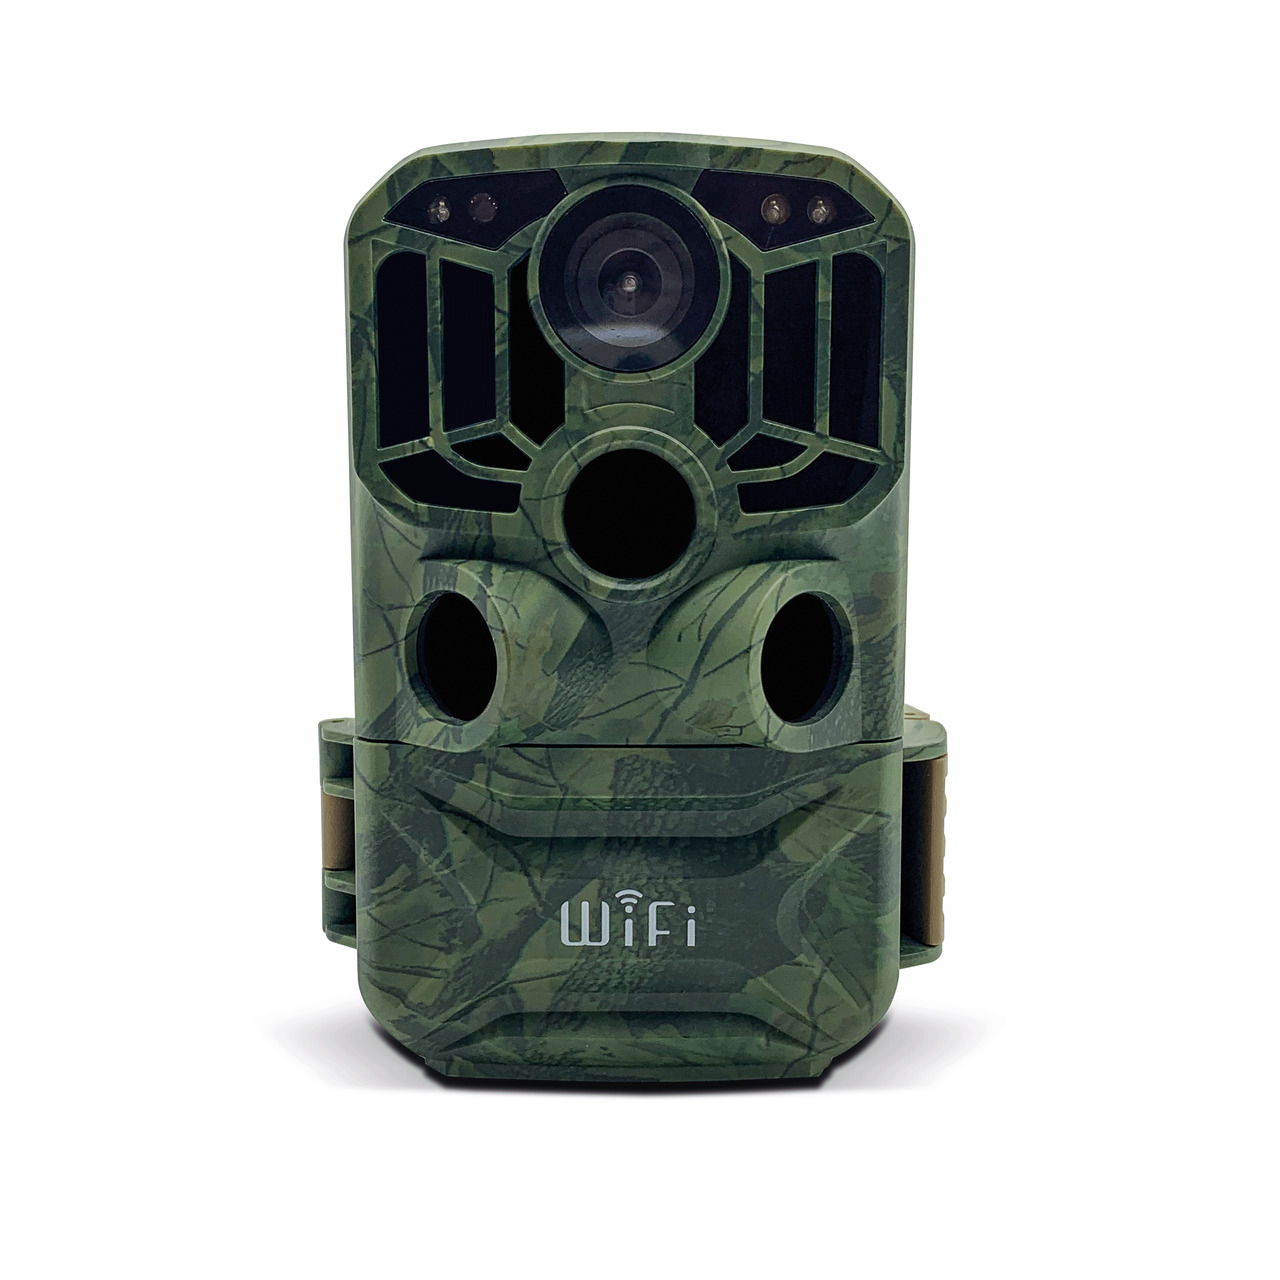 Braun Fotofalle - Wildkamera Scouting Cam BLACK800 WiFi- 24 MP- 1296p- IP66- Auslösezeit 0-6s